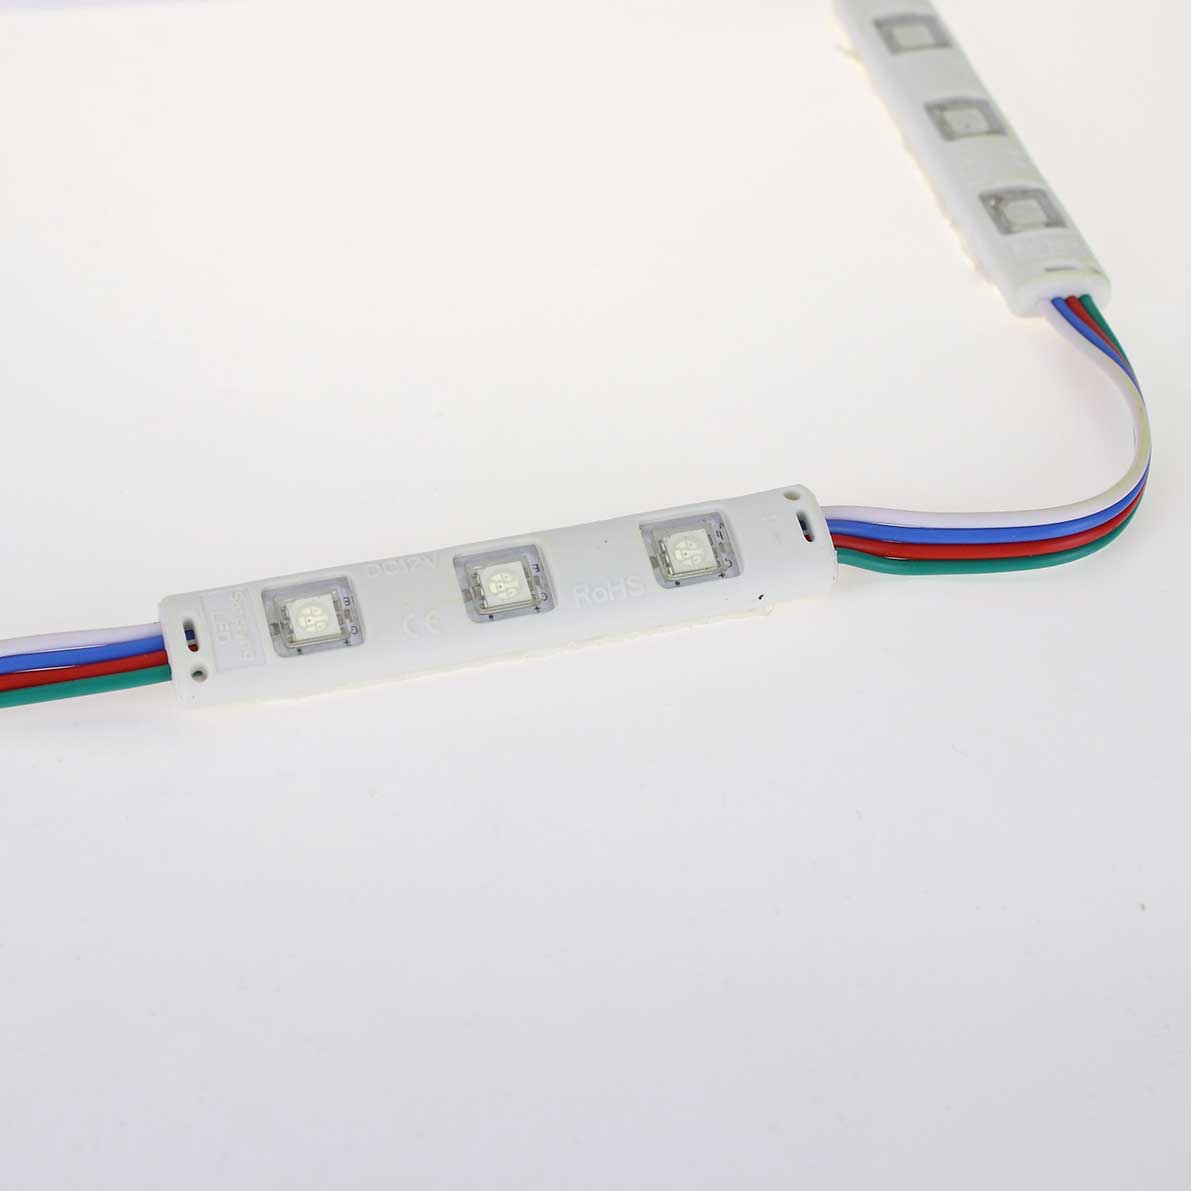 Герметичные светодиодные модули Светодиодный модуль линейный 5050-3 MOD45 (0,72W, 12V, RGB)